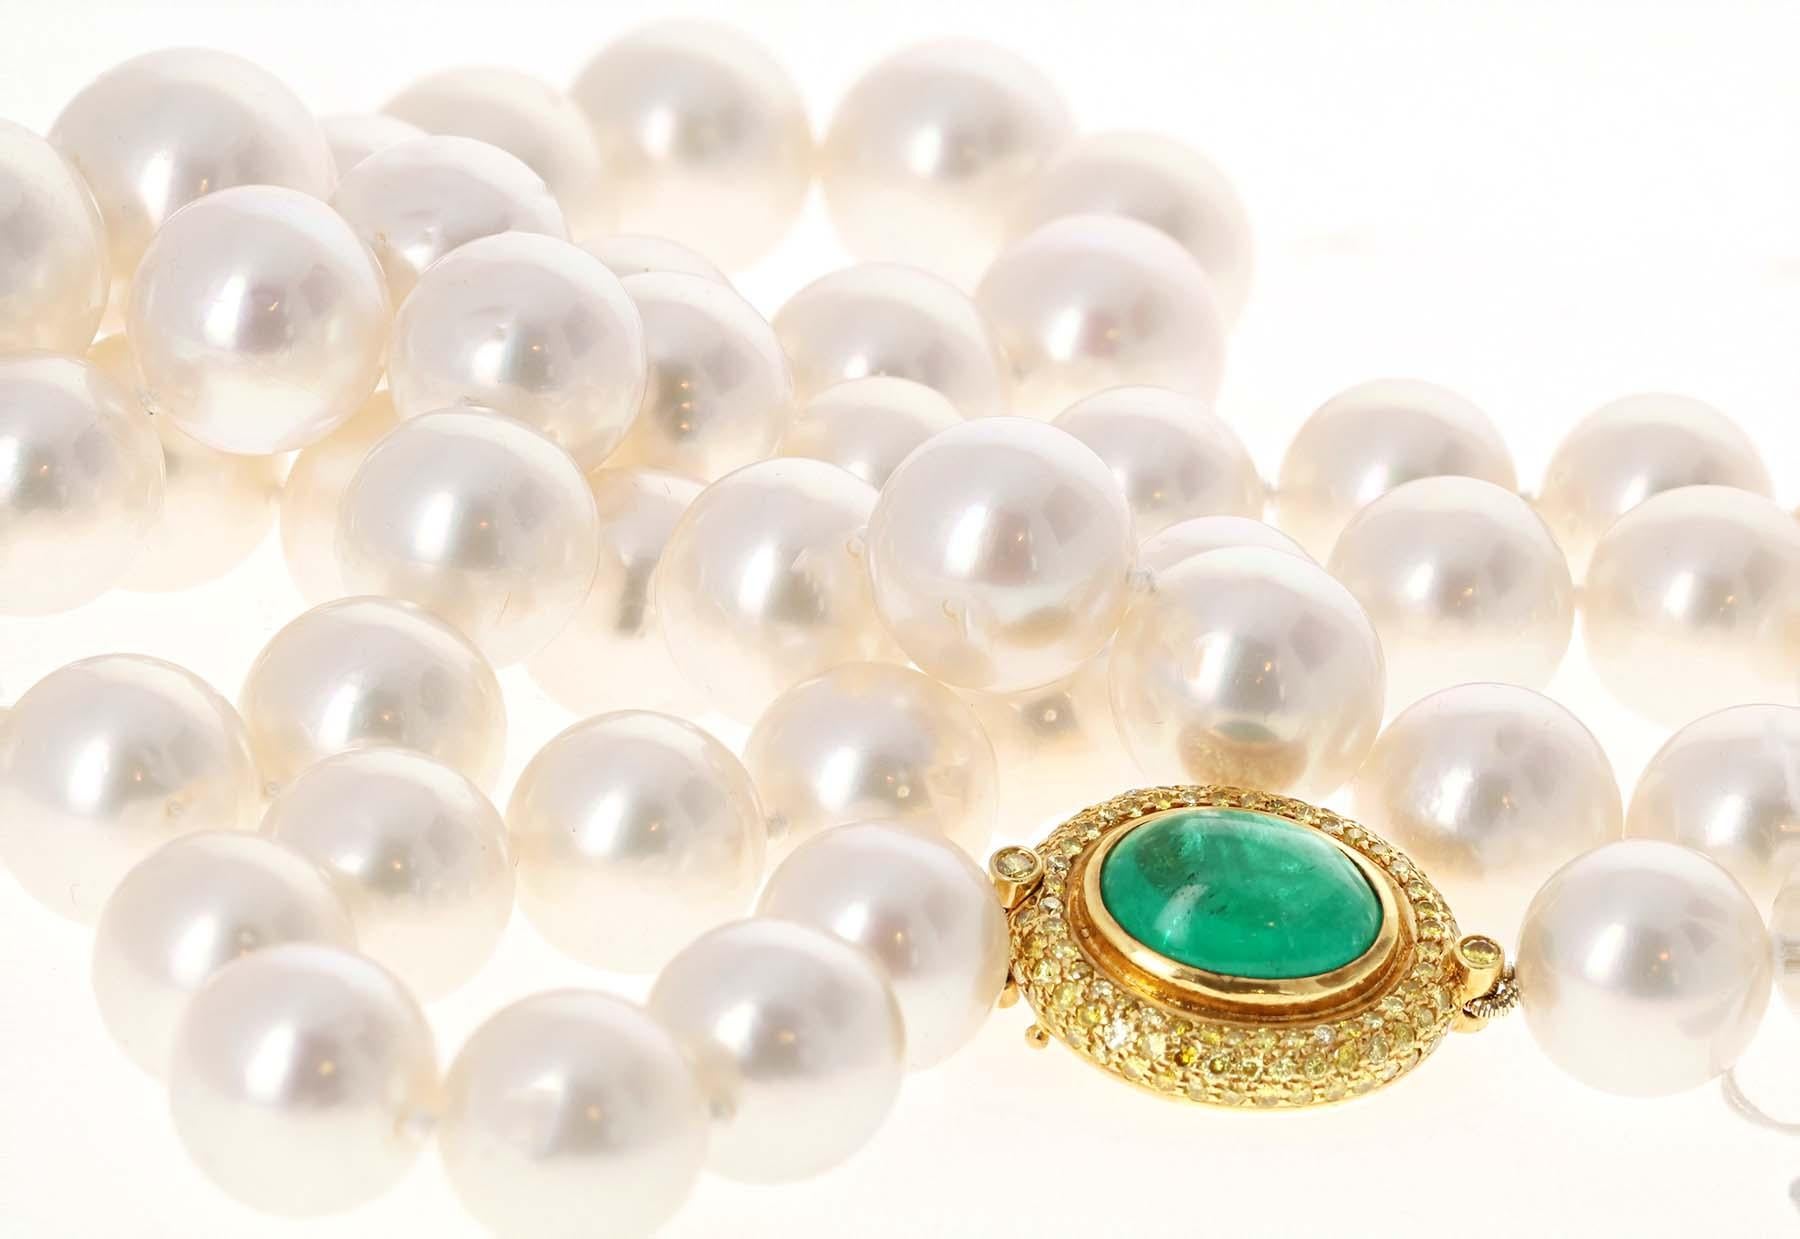 Diese Südseeperlenkette besteht aus 59 glänzenden Perlen mit schönem Perlmutt und minimaler Lochfraßbildung. Die schimmernden Perlen werden zwischen 12 und 16 Millimetern groß. Die mittlere Perle hat eine perfekte Größe von 16 Millimetern. Elegant